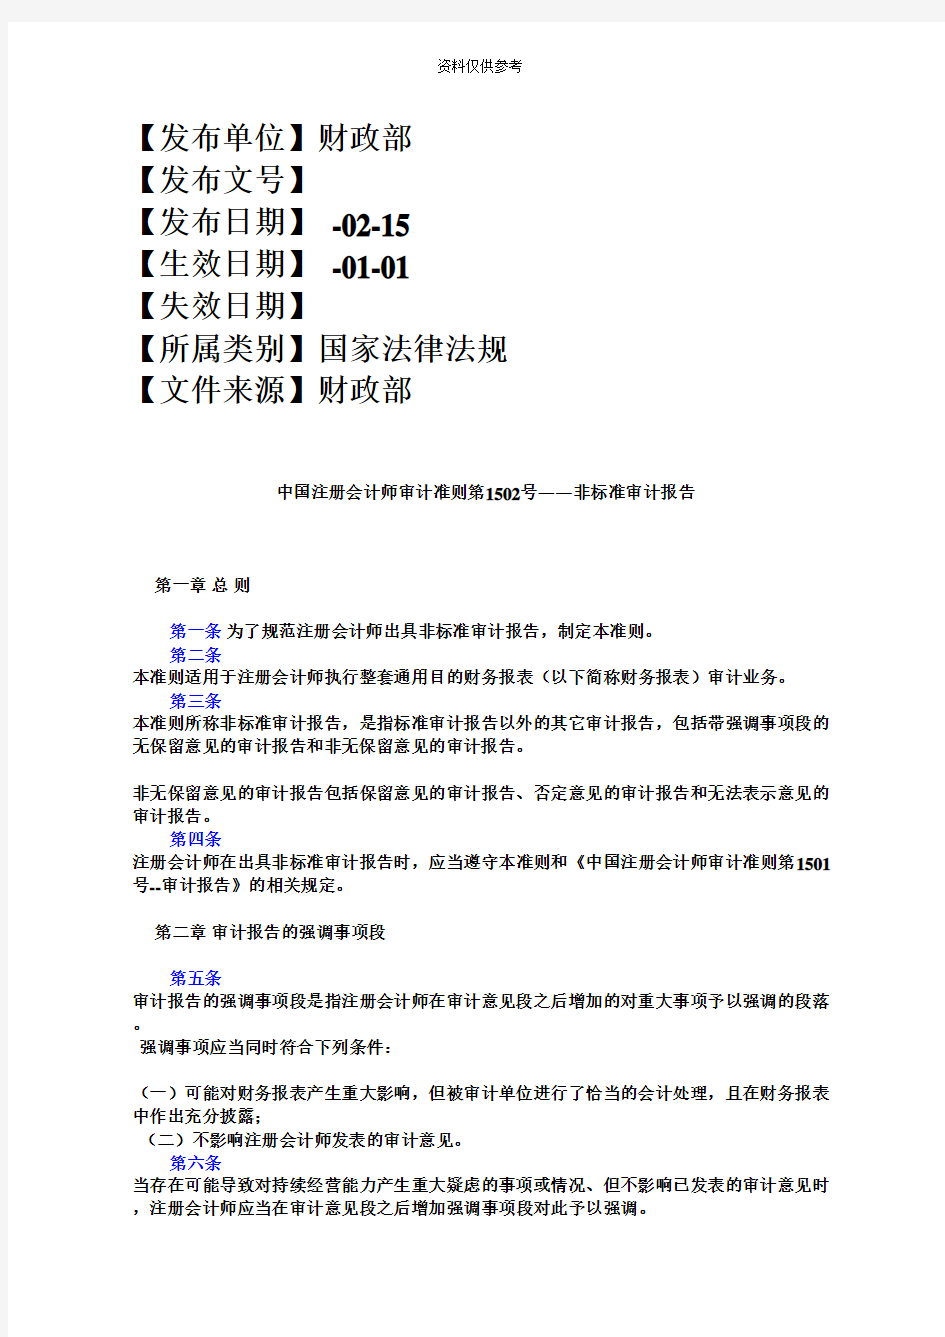 中国注册会计师审计准则第1502号――非标准审计报告